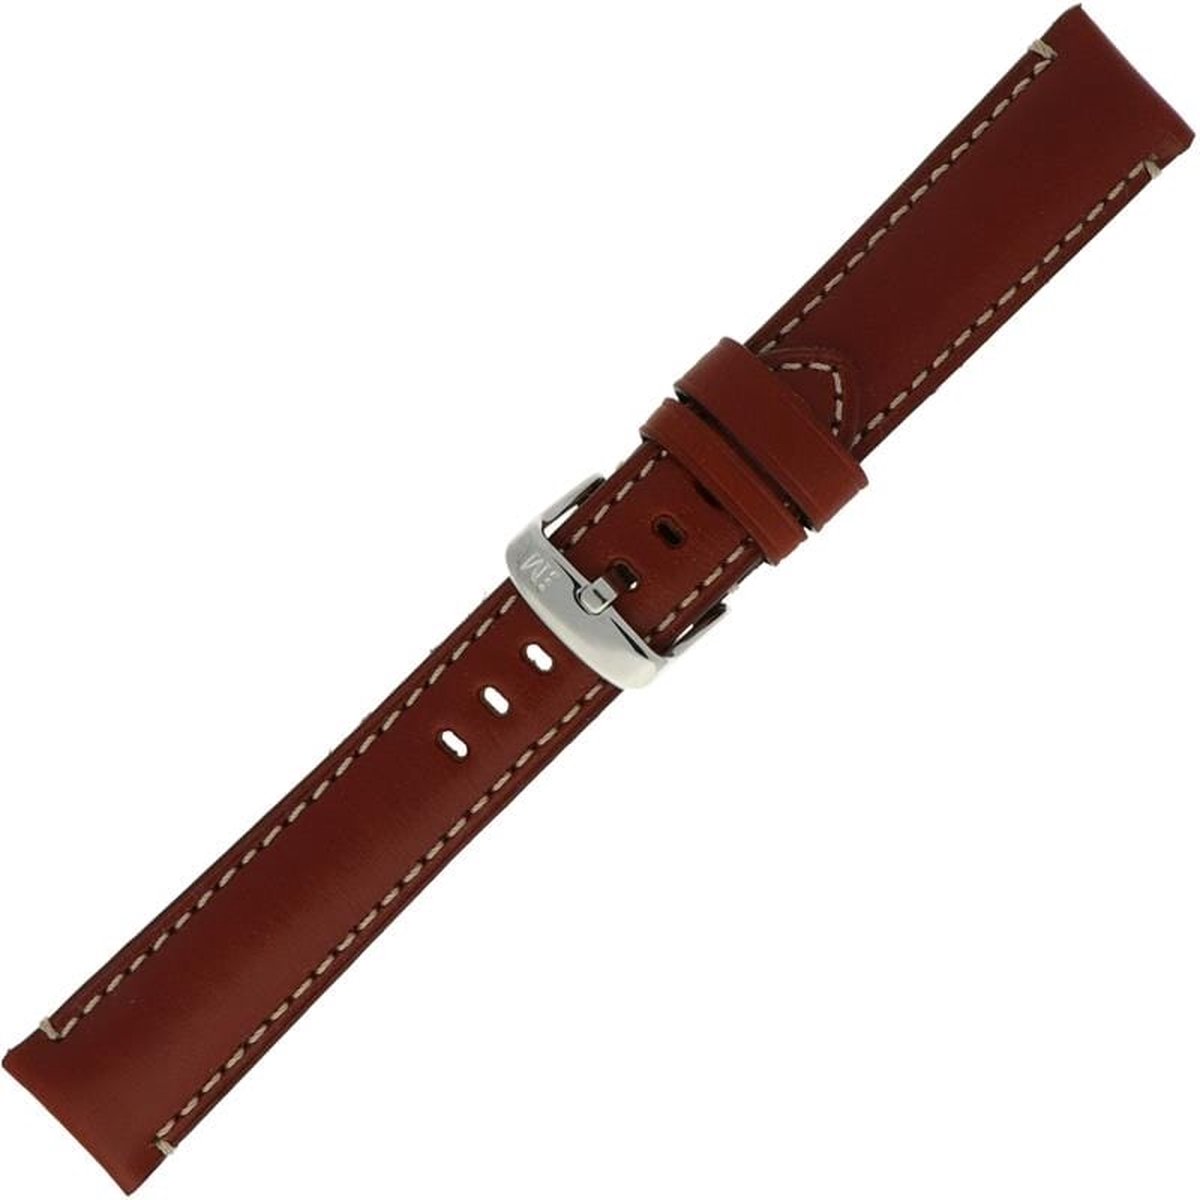 Morellato PMX041GIORGI18 Manufatti Horlogeband - 18mm